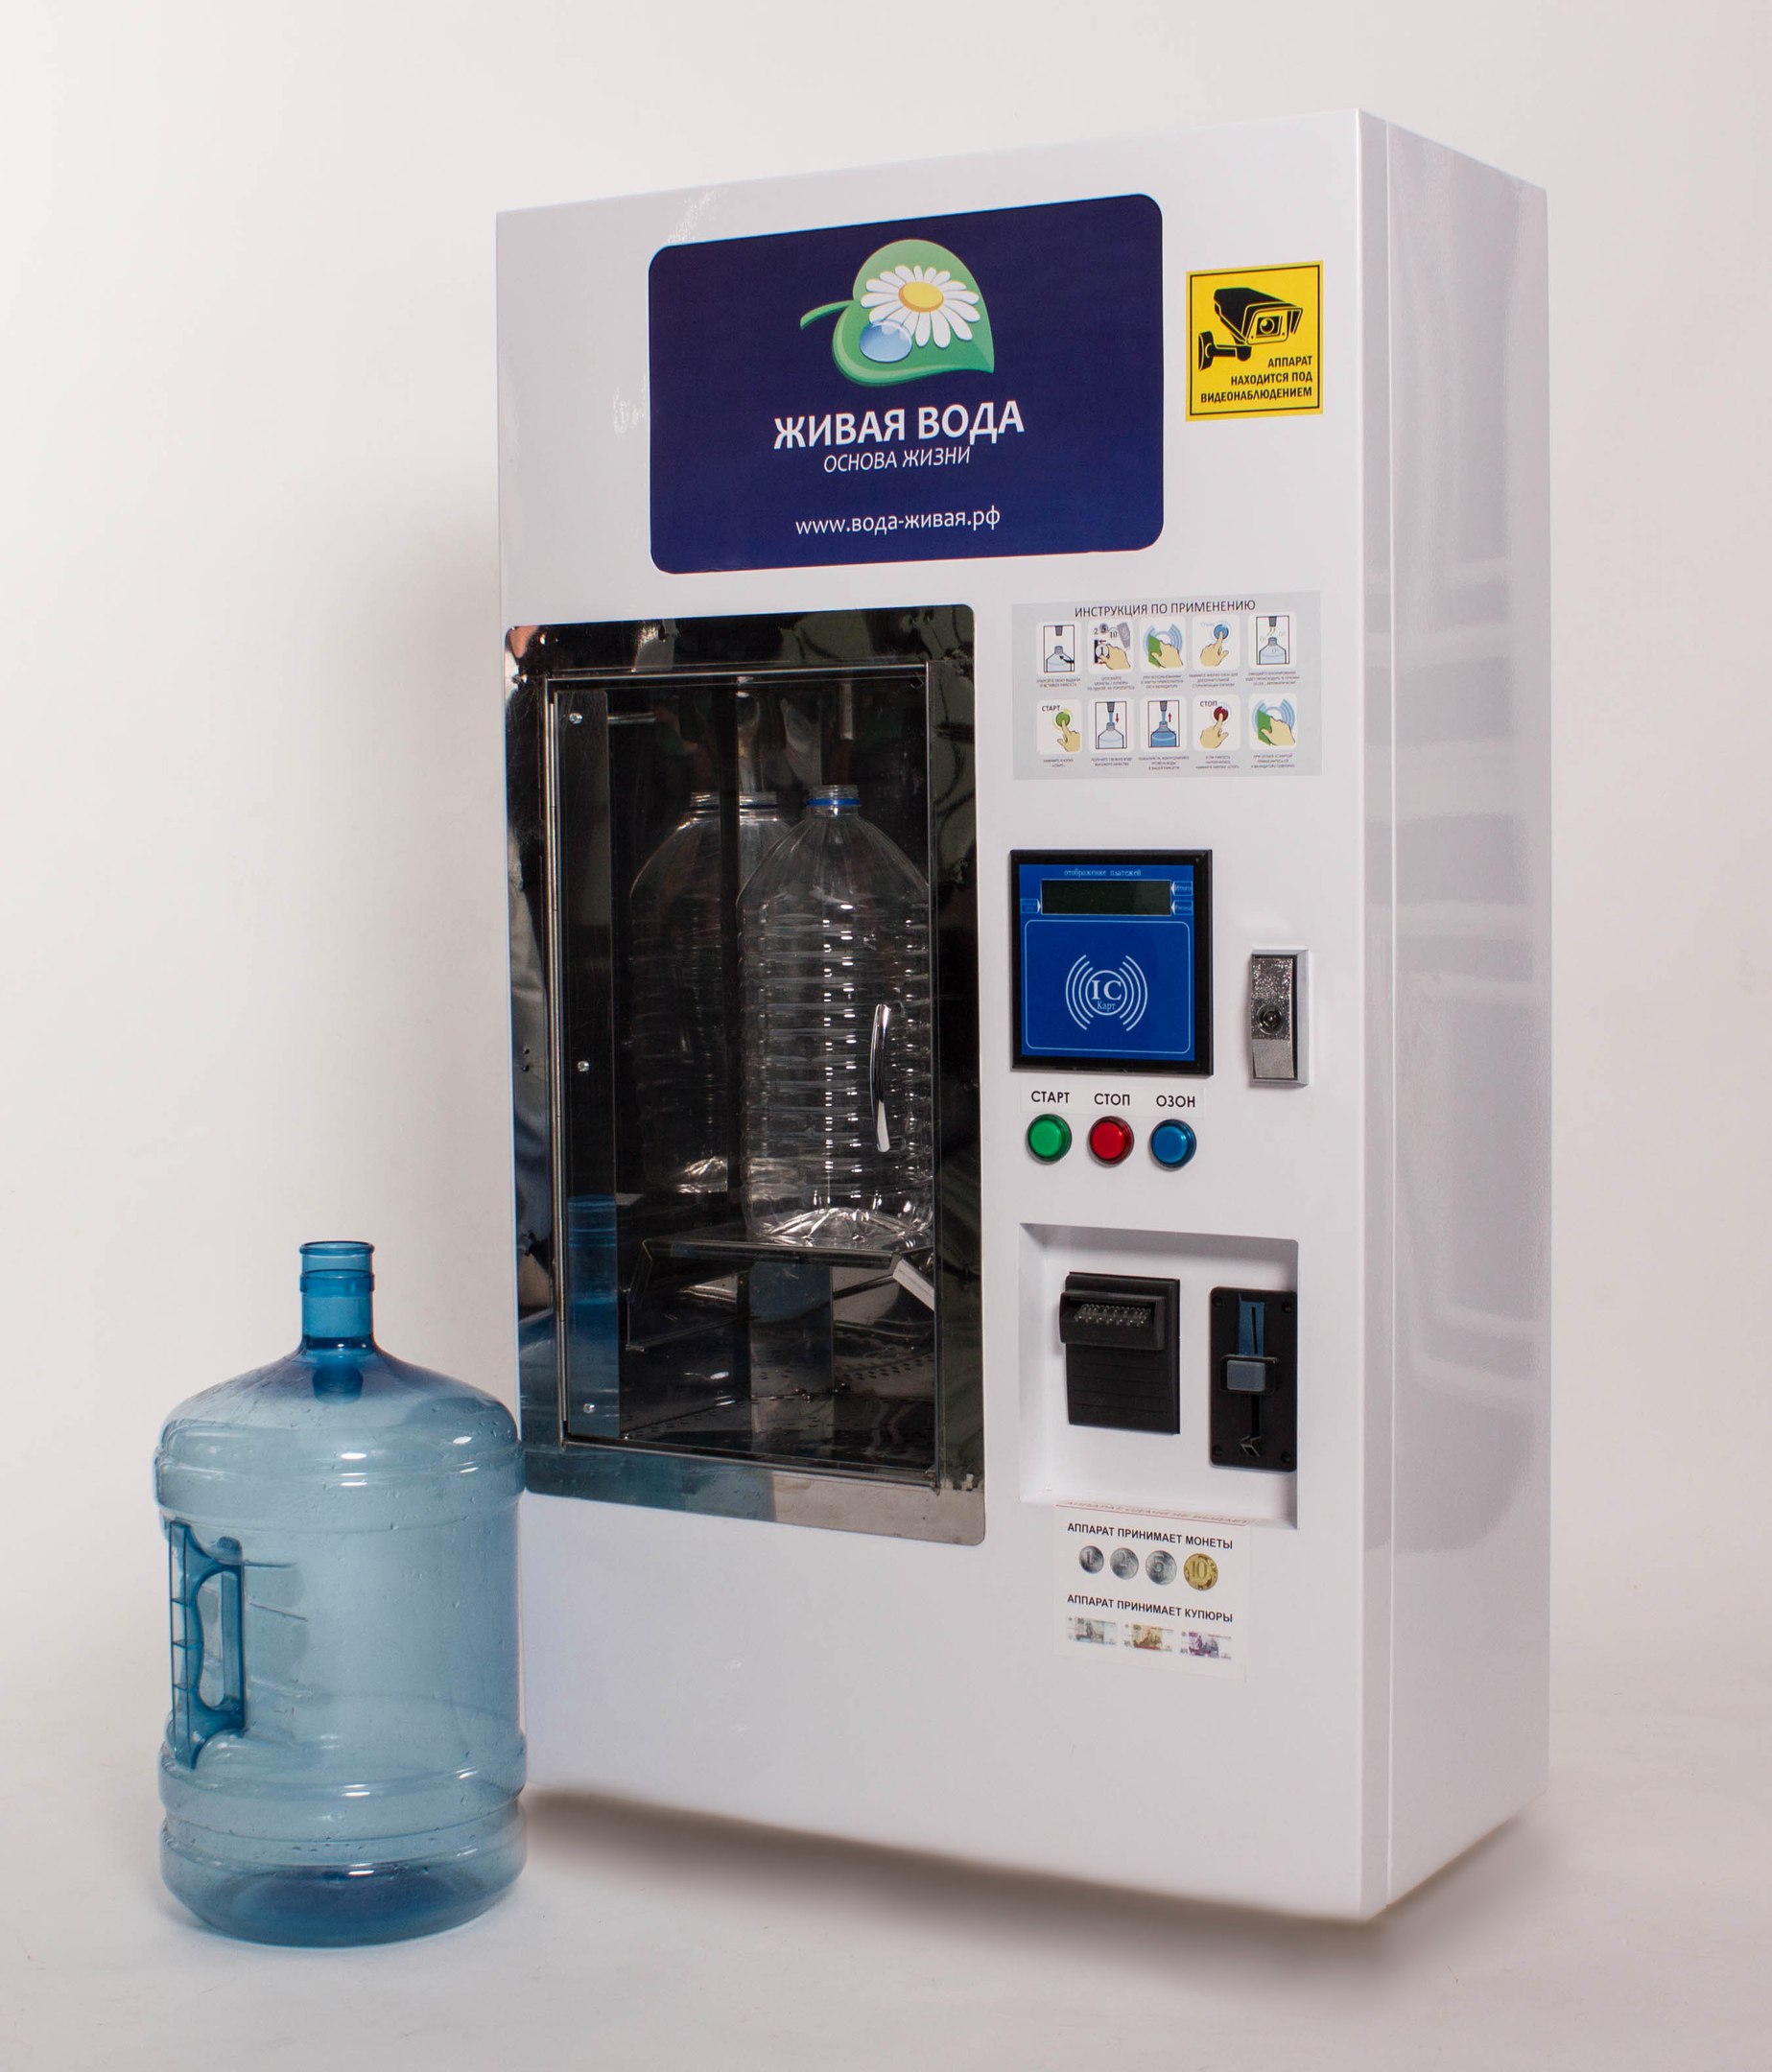 Очищенная вода автомат. Водоматы питьевой воды Живая вода. Аппарат нанофрост 300 Живая вода. Аппарат Живая вода Фрост. Вендинговый аппарат Живая вода.